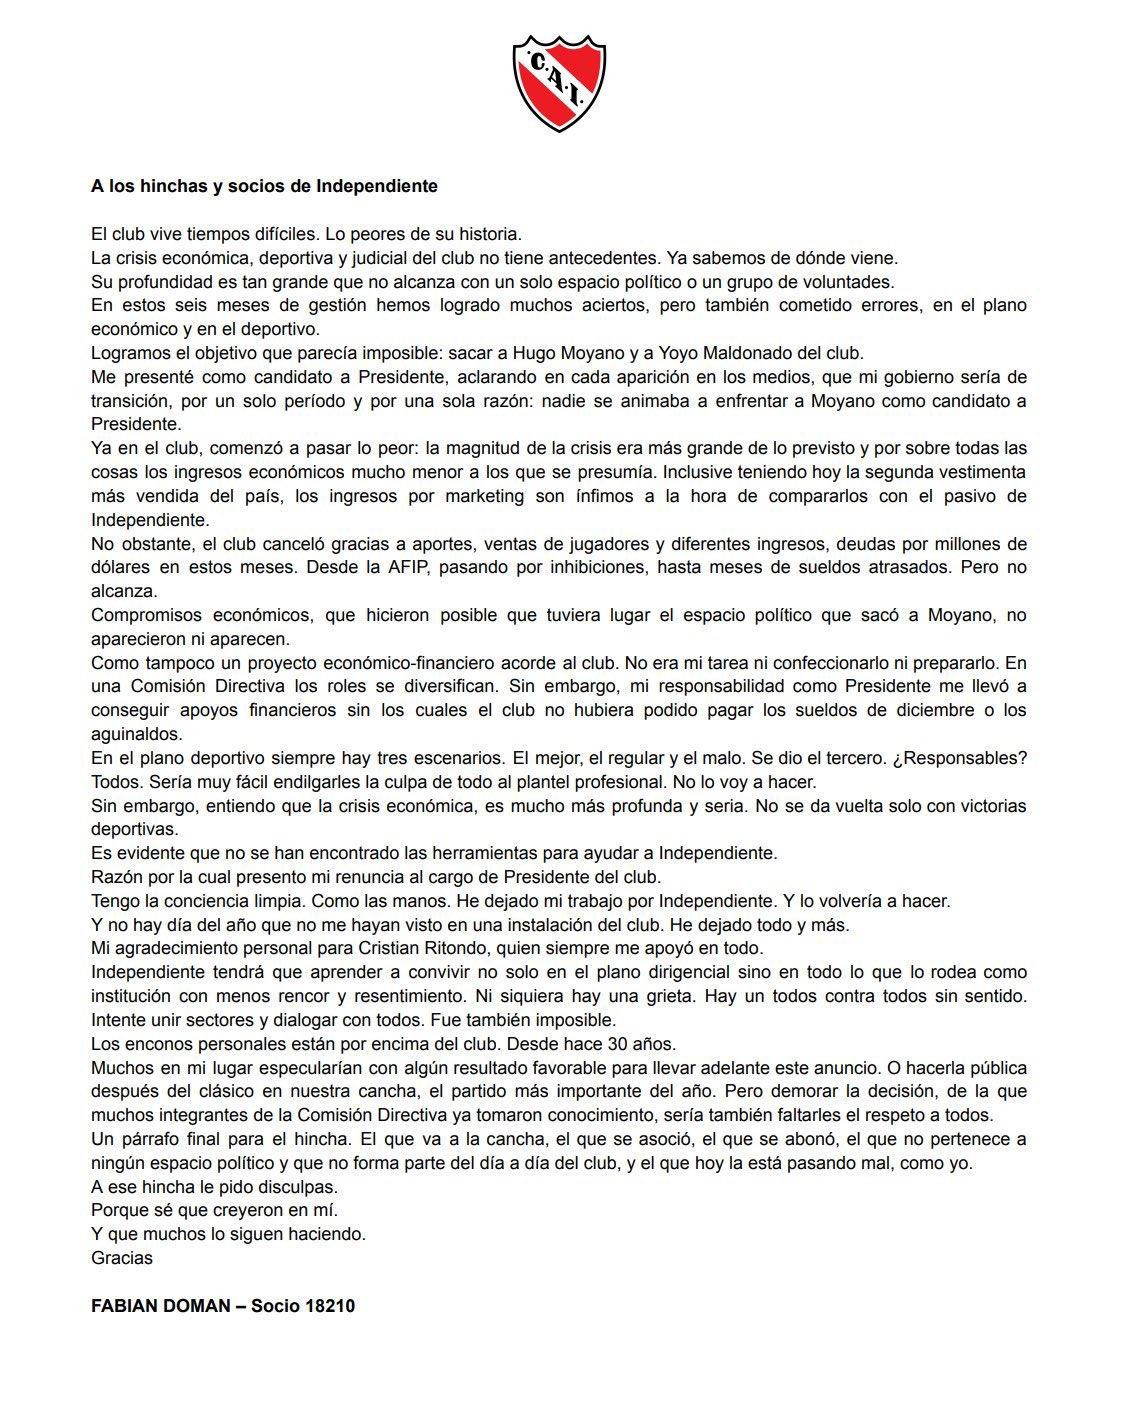 Comunicado de Fabián Doman sobre su renuncia a Independiente. 